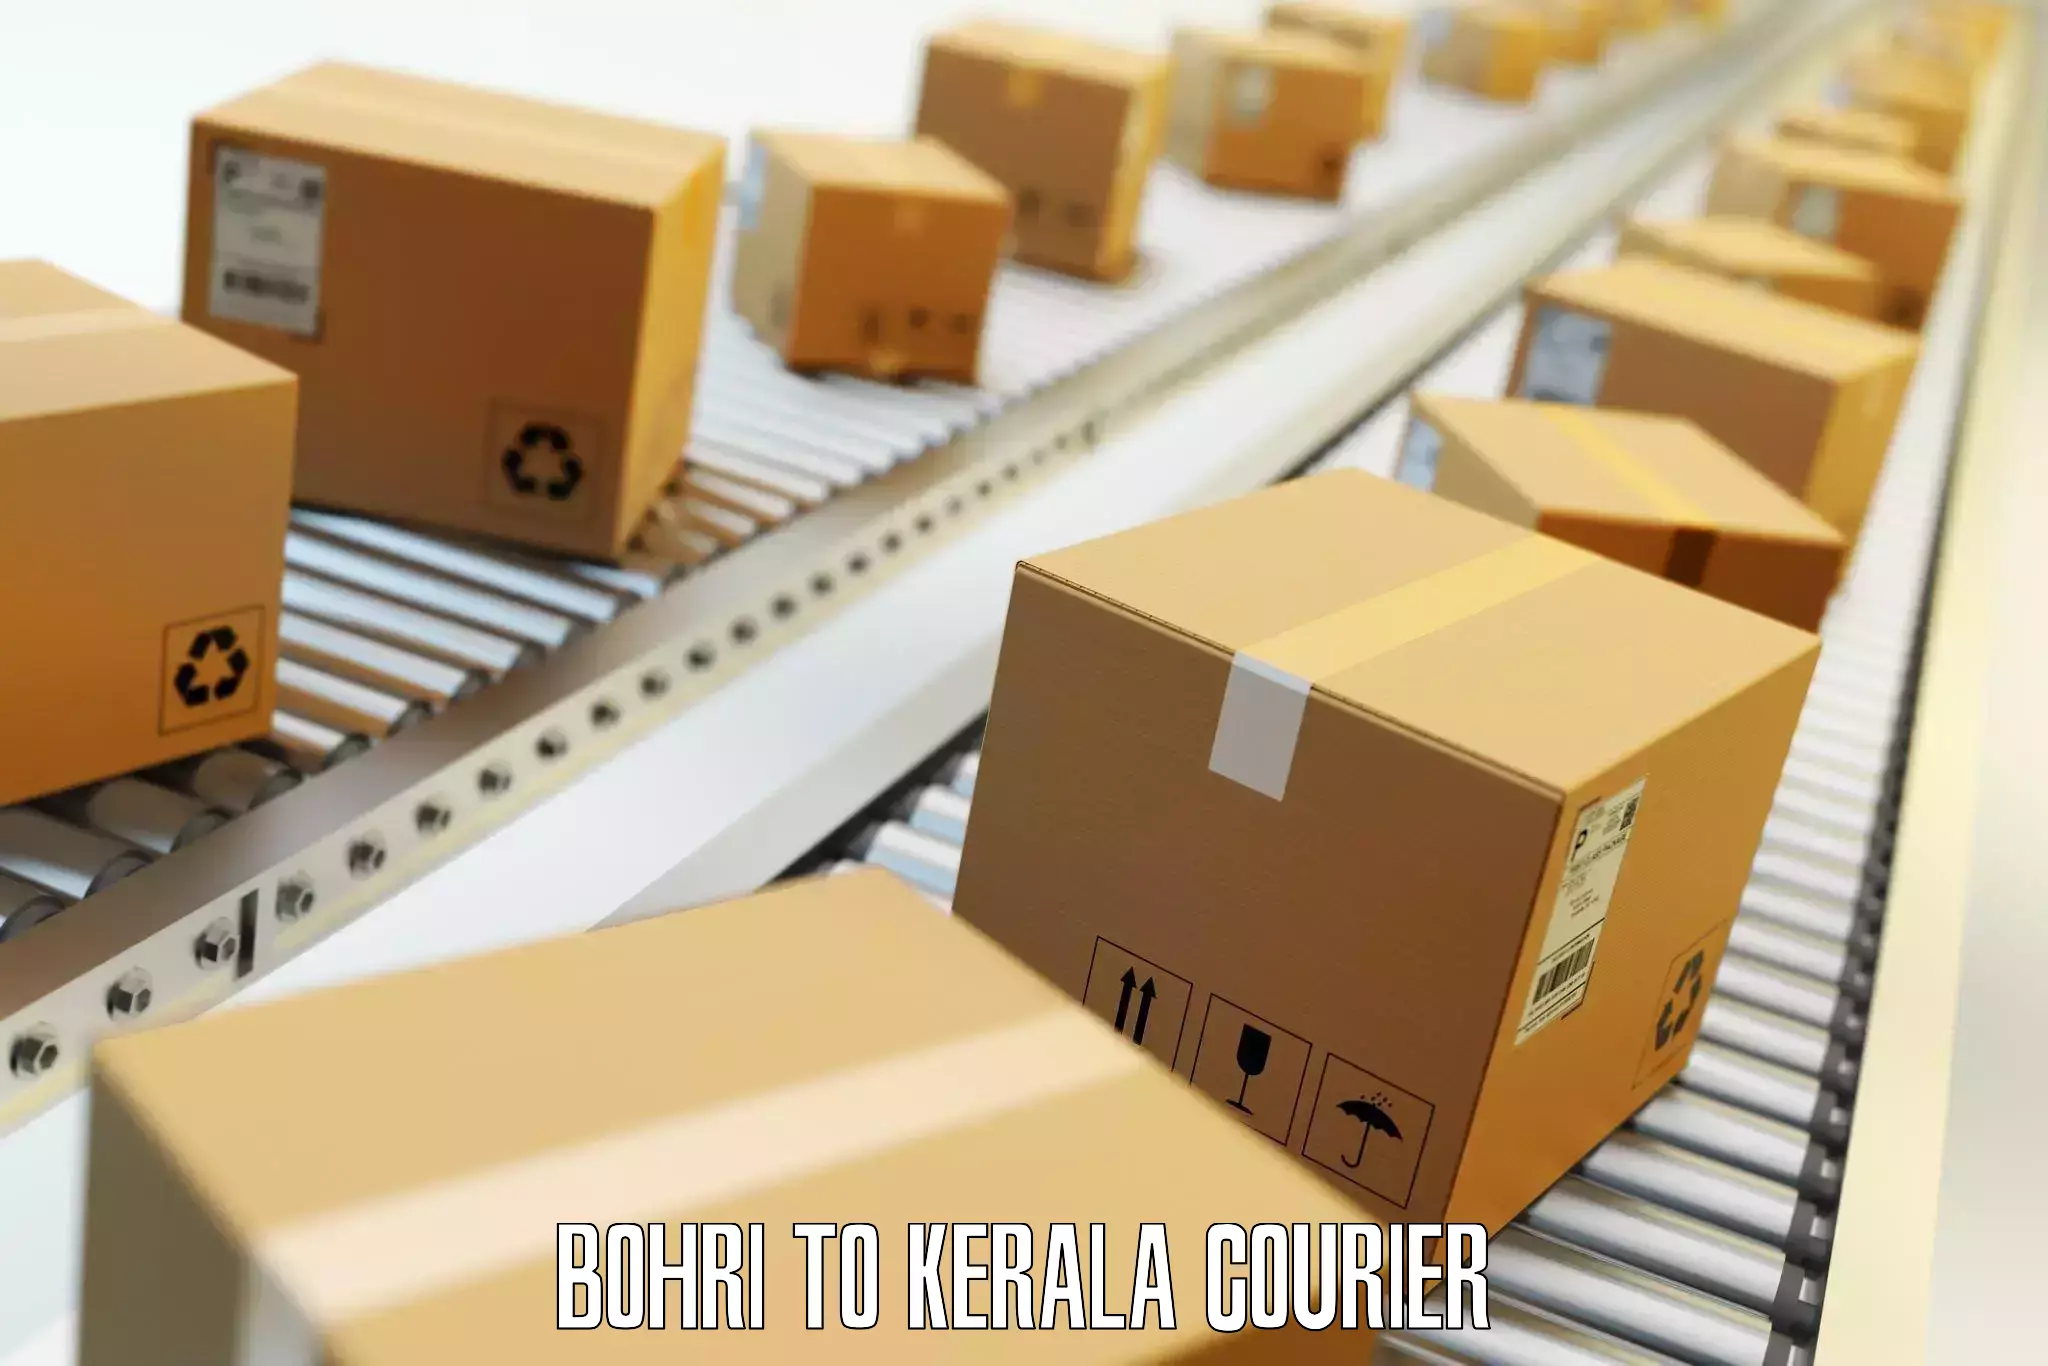 Corporate baggage transport in Bohri to Kerala